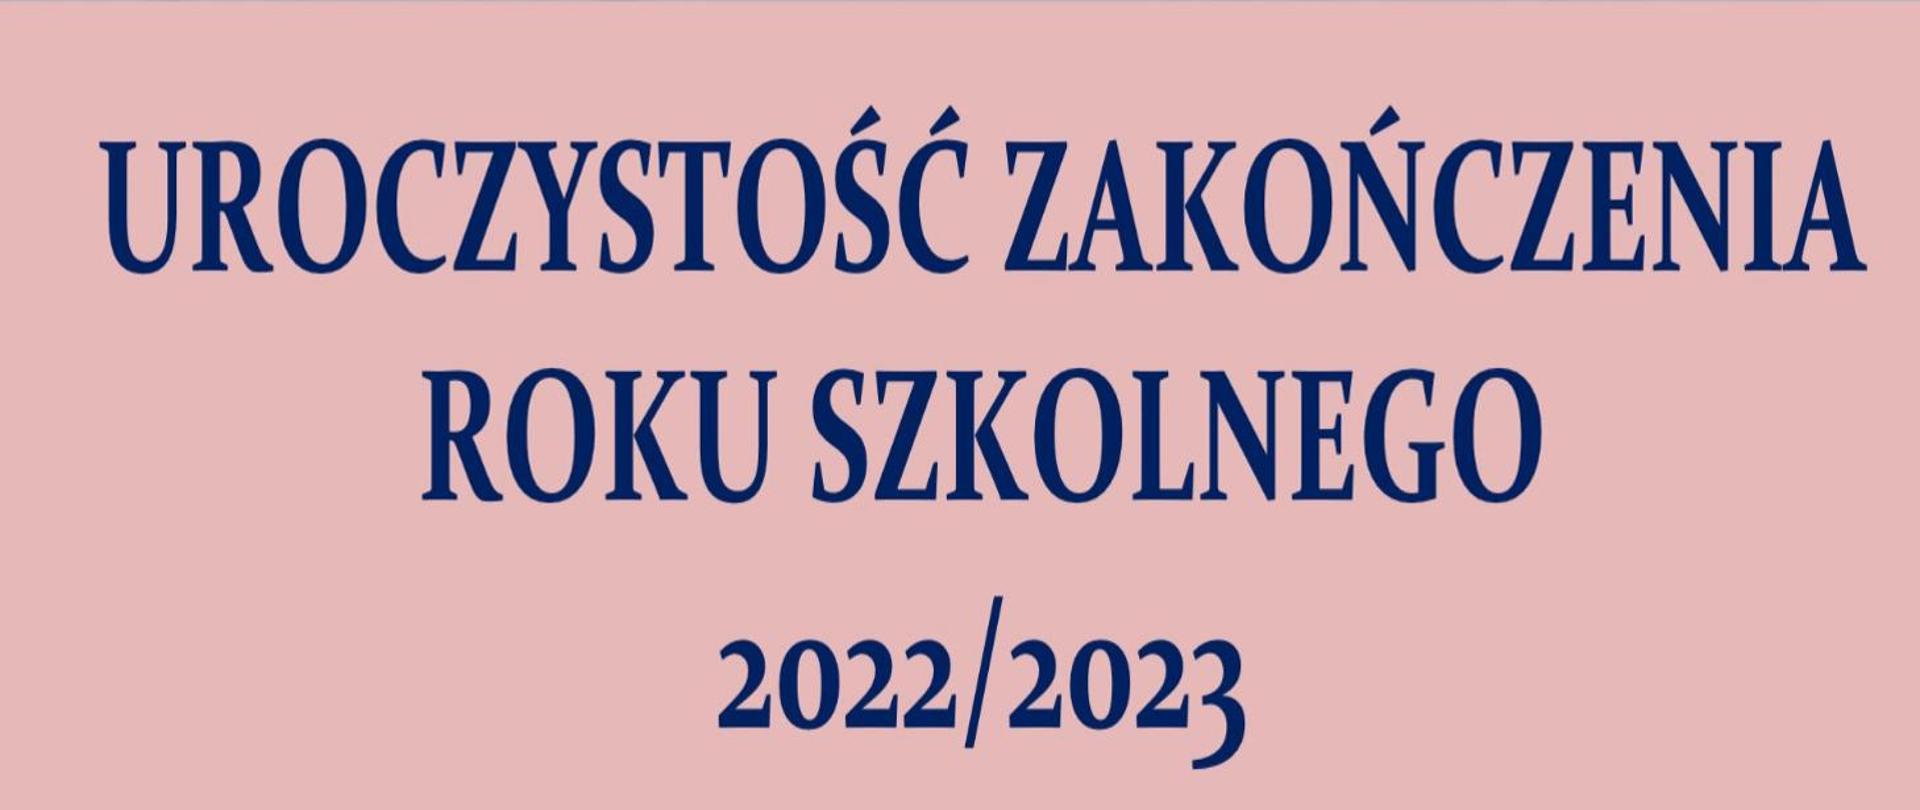 Na różowym tle, niebieskie litery: UROCZYSTOŚĆ ZAKOŃCZENIA ROKU SZKOLNEGO 2022/2023